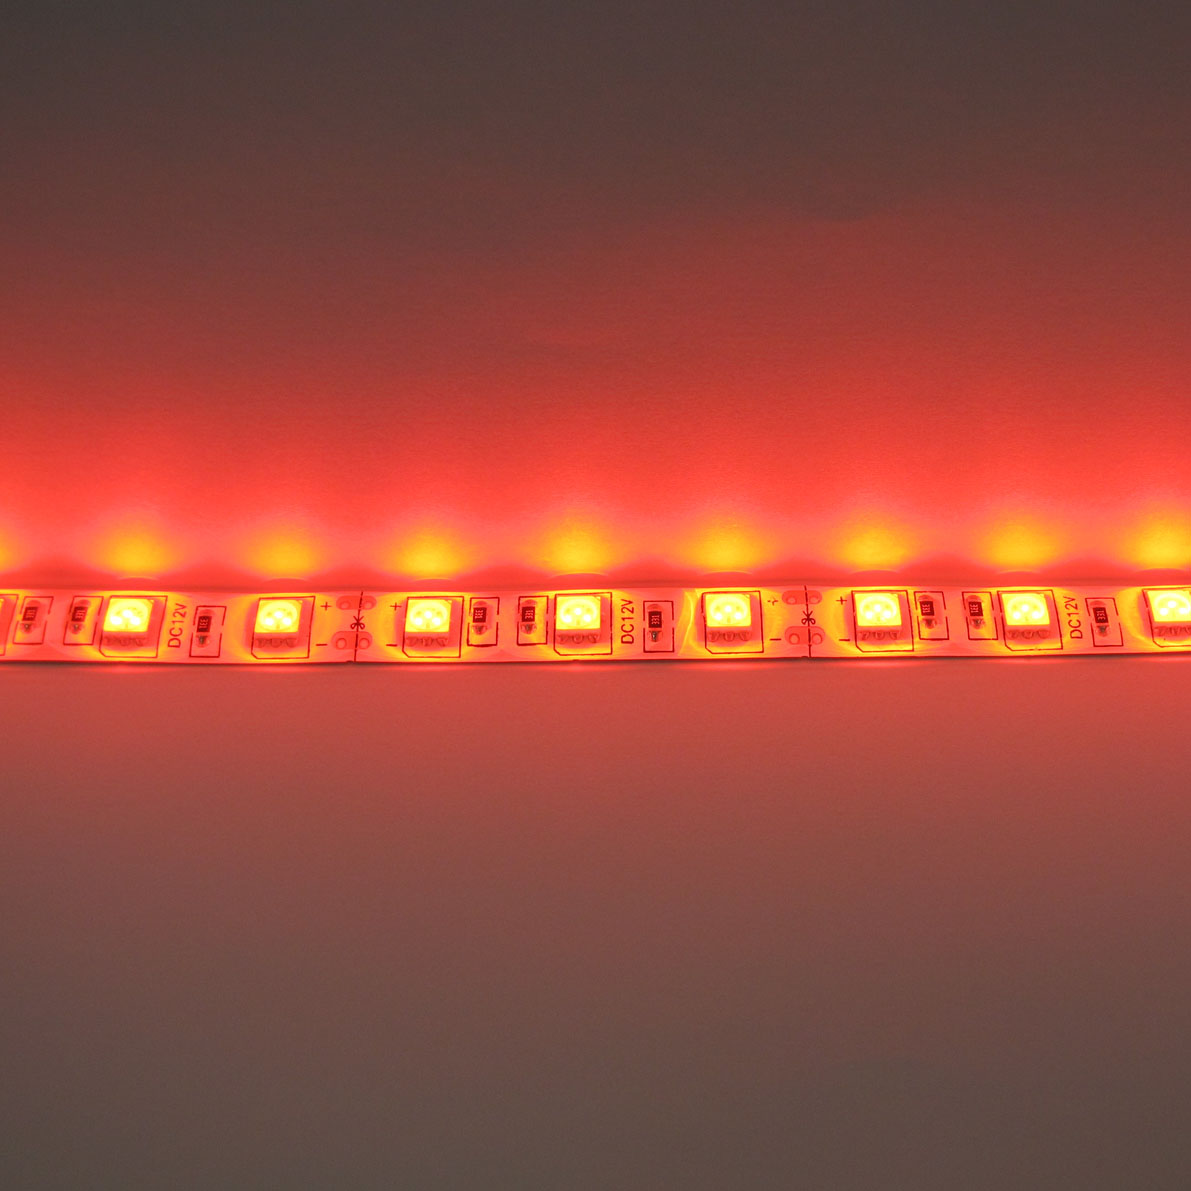 светодиодная лента standart class, 5050, 60led/m, red, 12v, ip65, артикул 52724